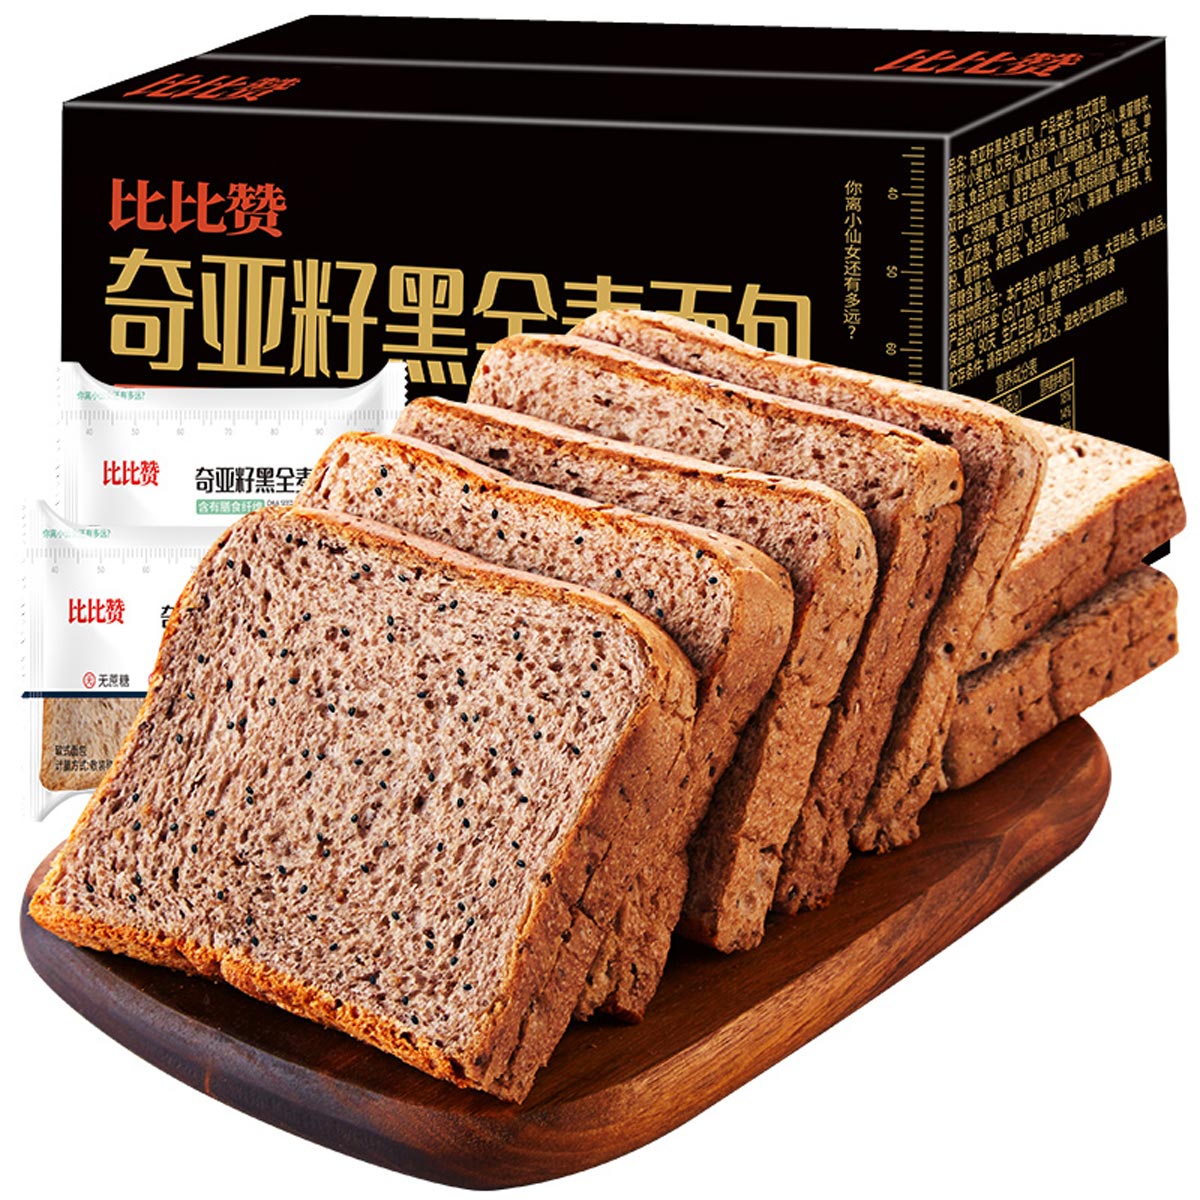 bi bi zan 比比赞 奇亚籽黑全麦面包 1kg 15.3元